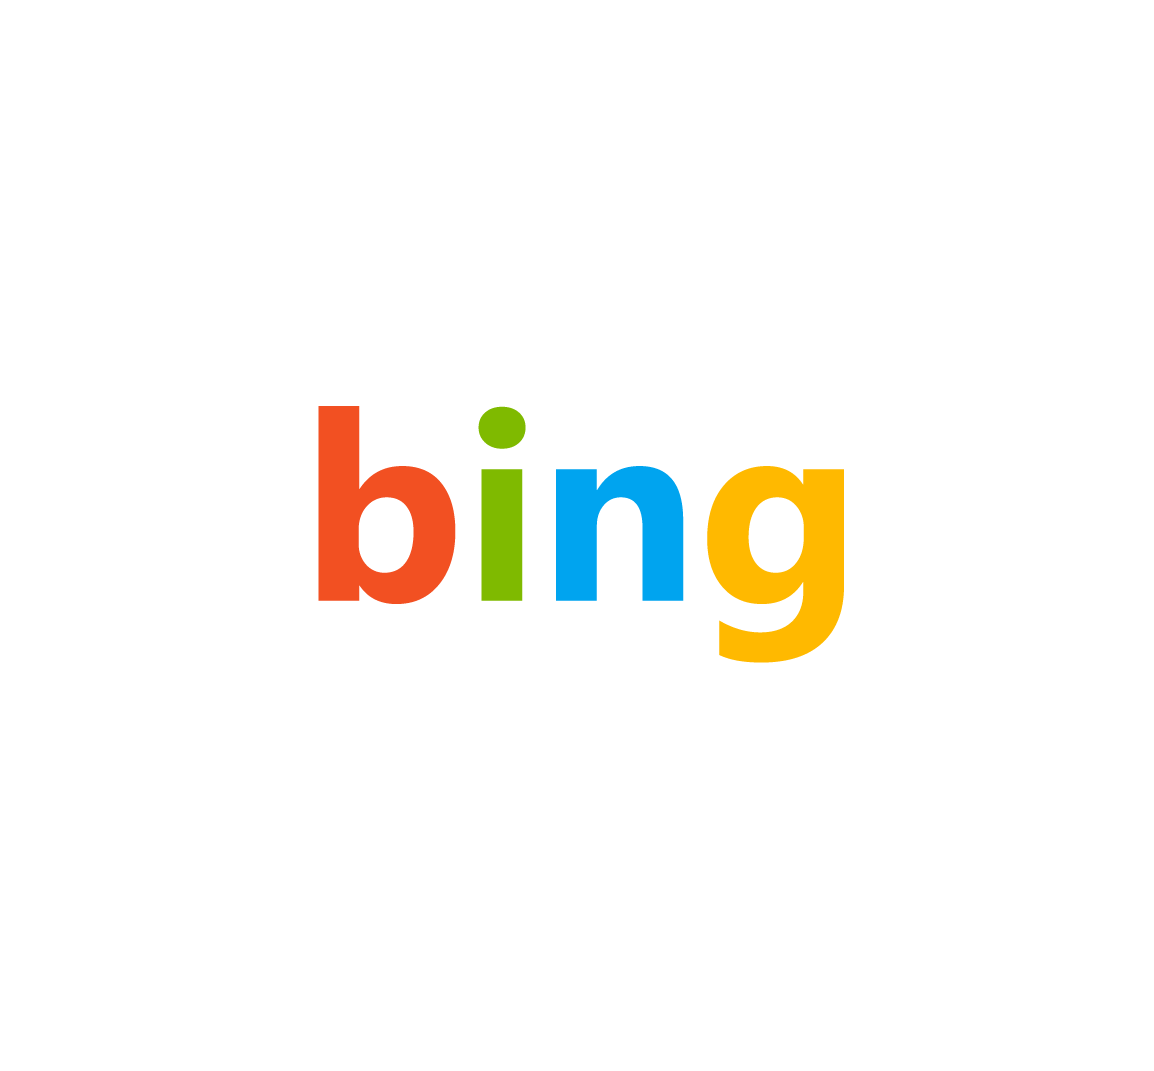 New Bing Logo